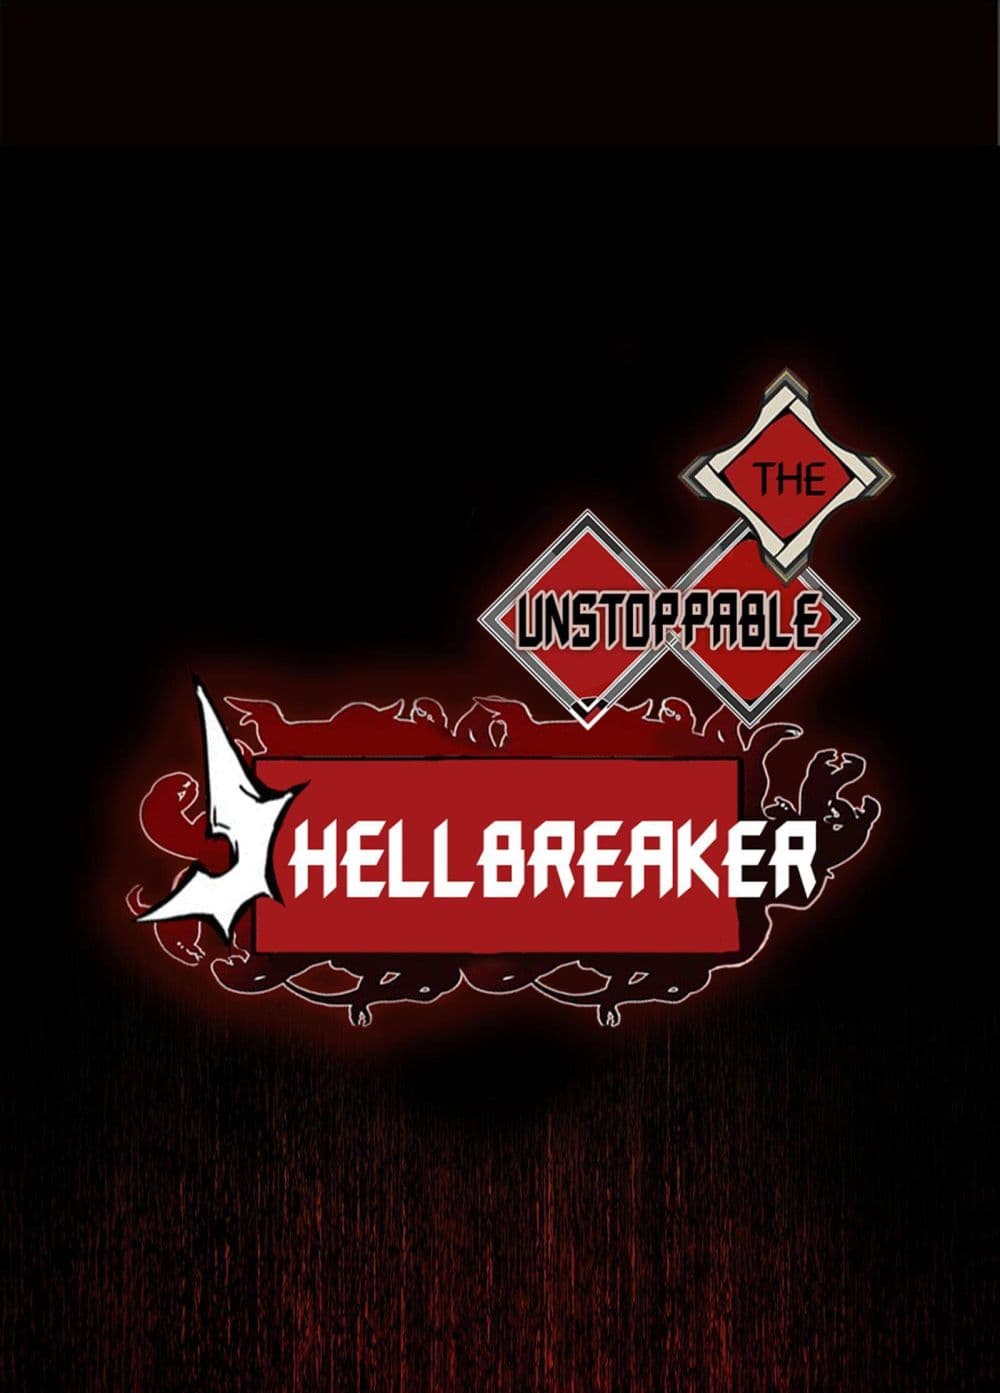 The Unstoppable Hellbreaker 13-13